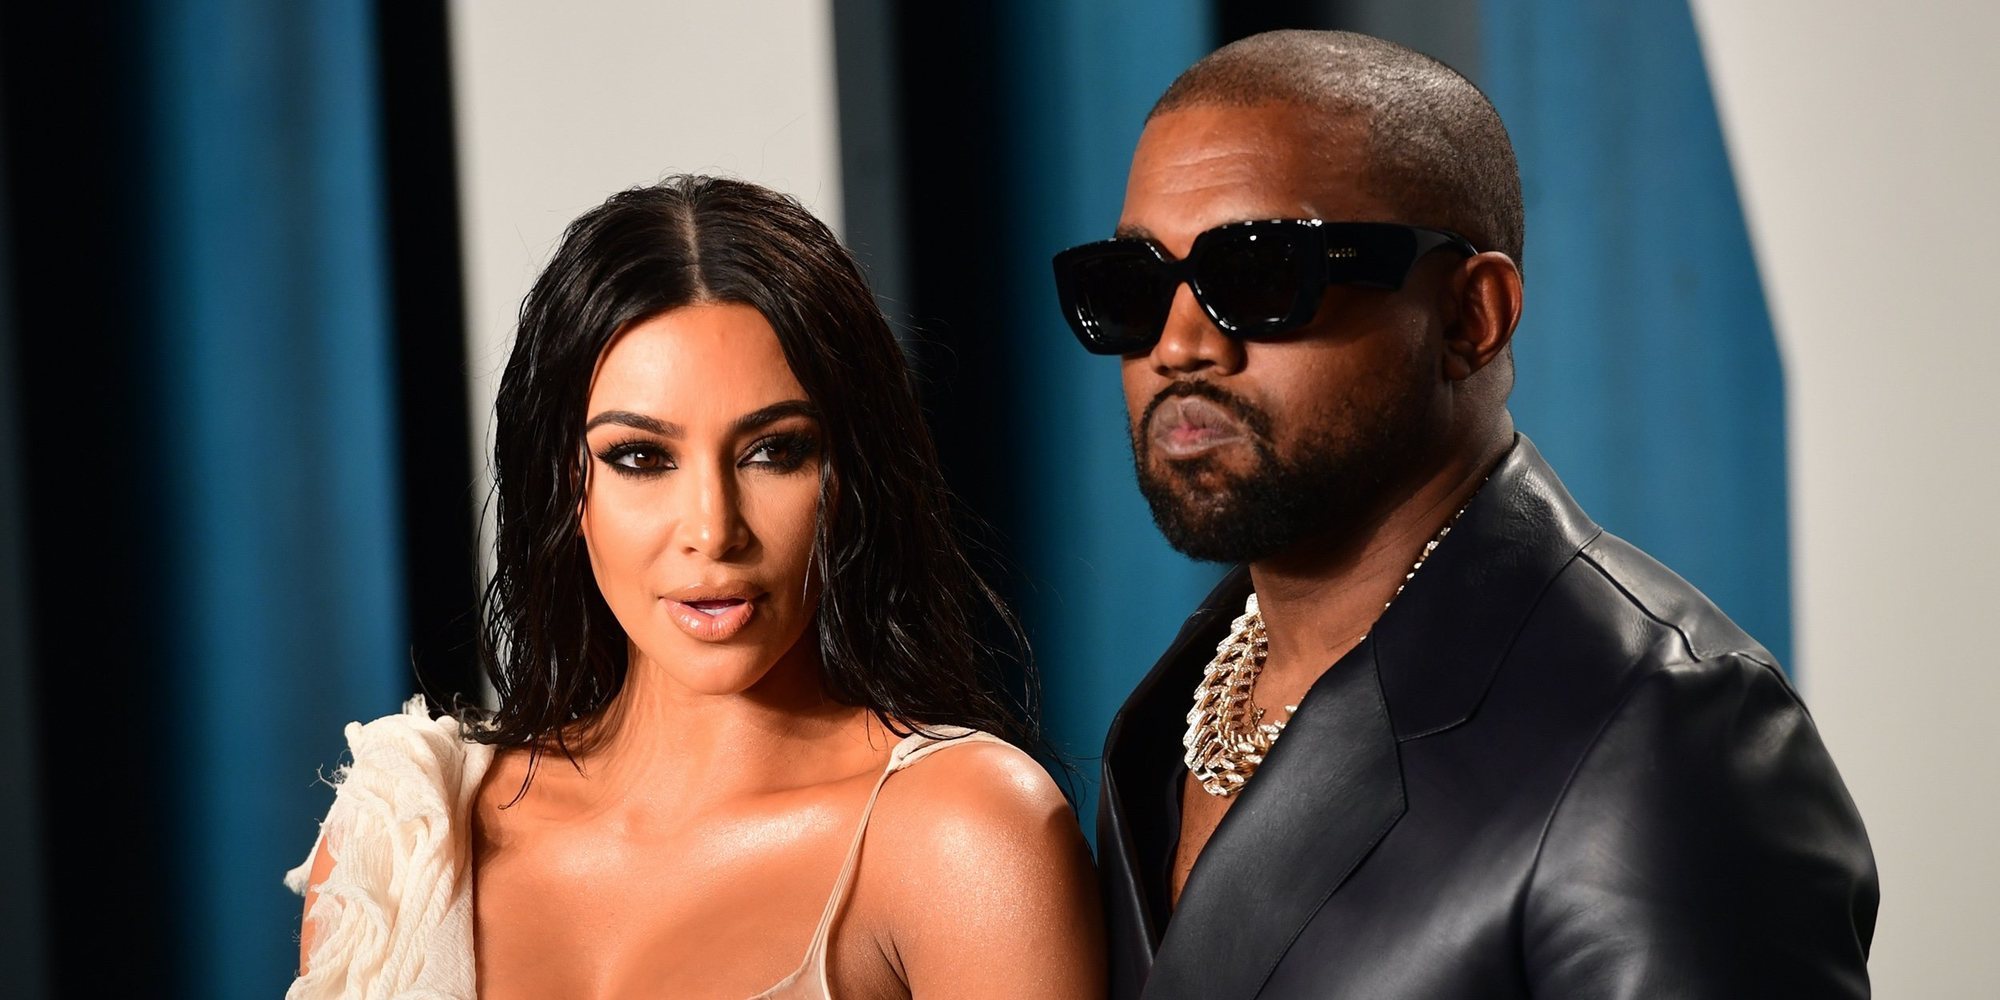 ¿Terminará también el 2021 con los Kardashian-West? Kim y Kanye parecen estar más distantes que nunca